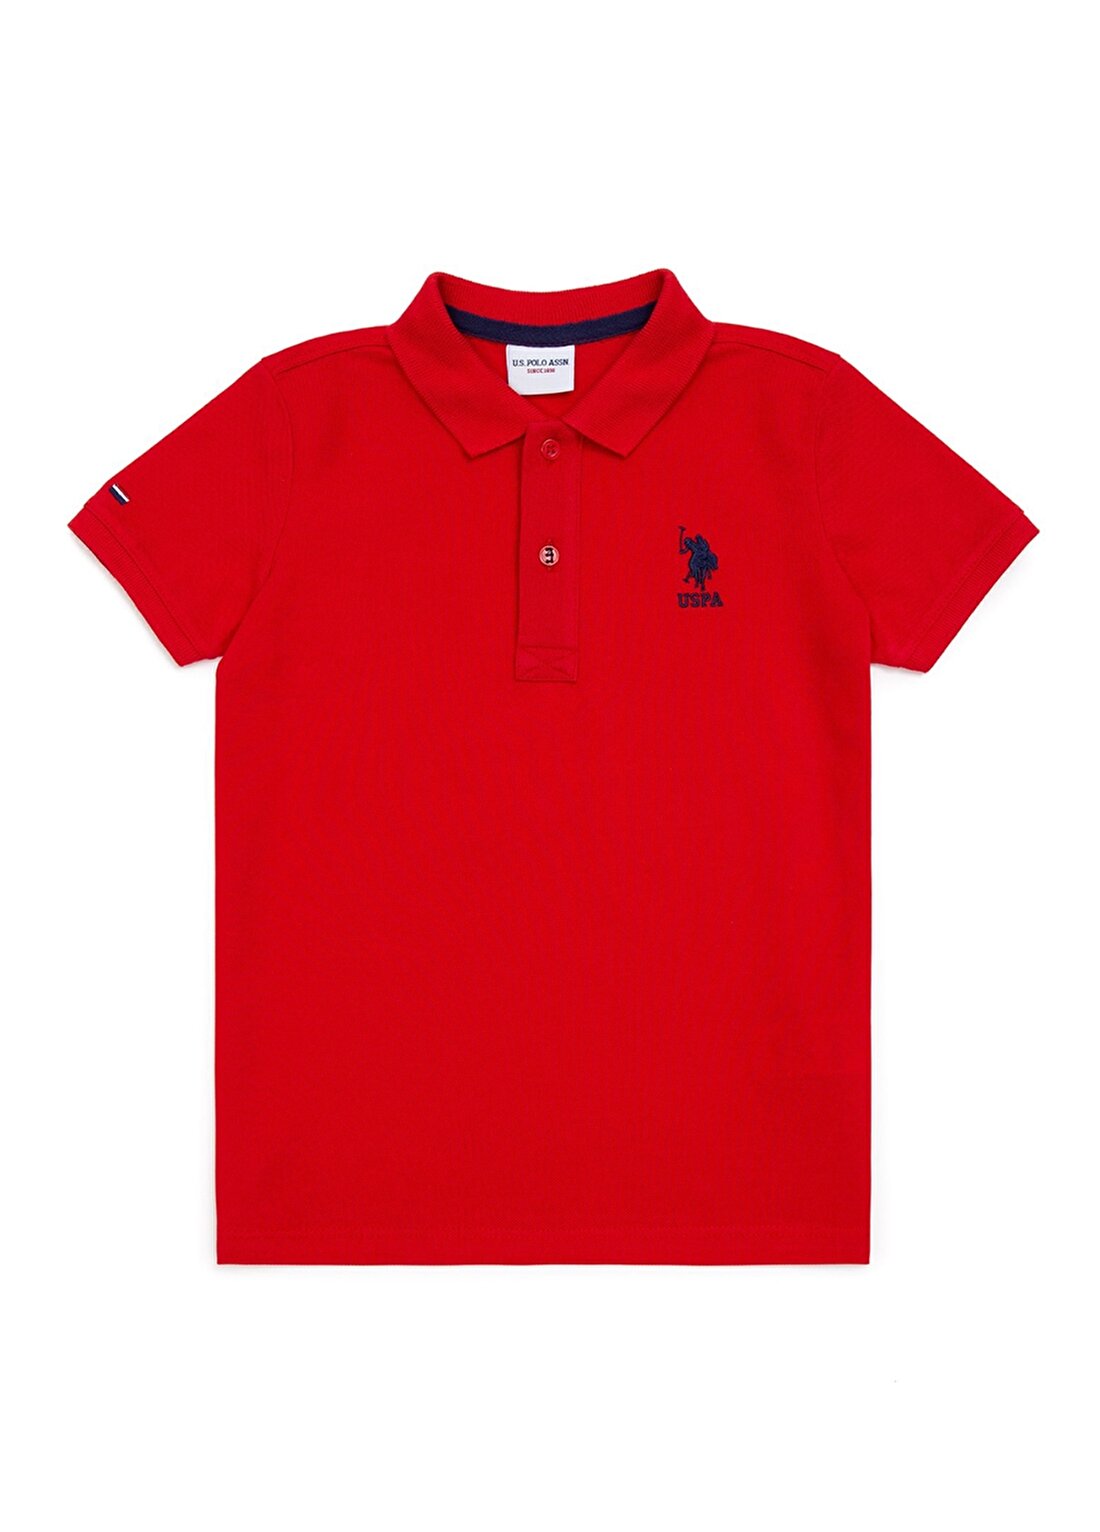 U.S. Polo Assn. Düz Kırmızı Erkek Çocuk Polo T-Shirt TP01IY022 -KIDS